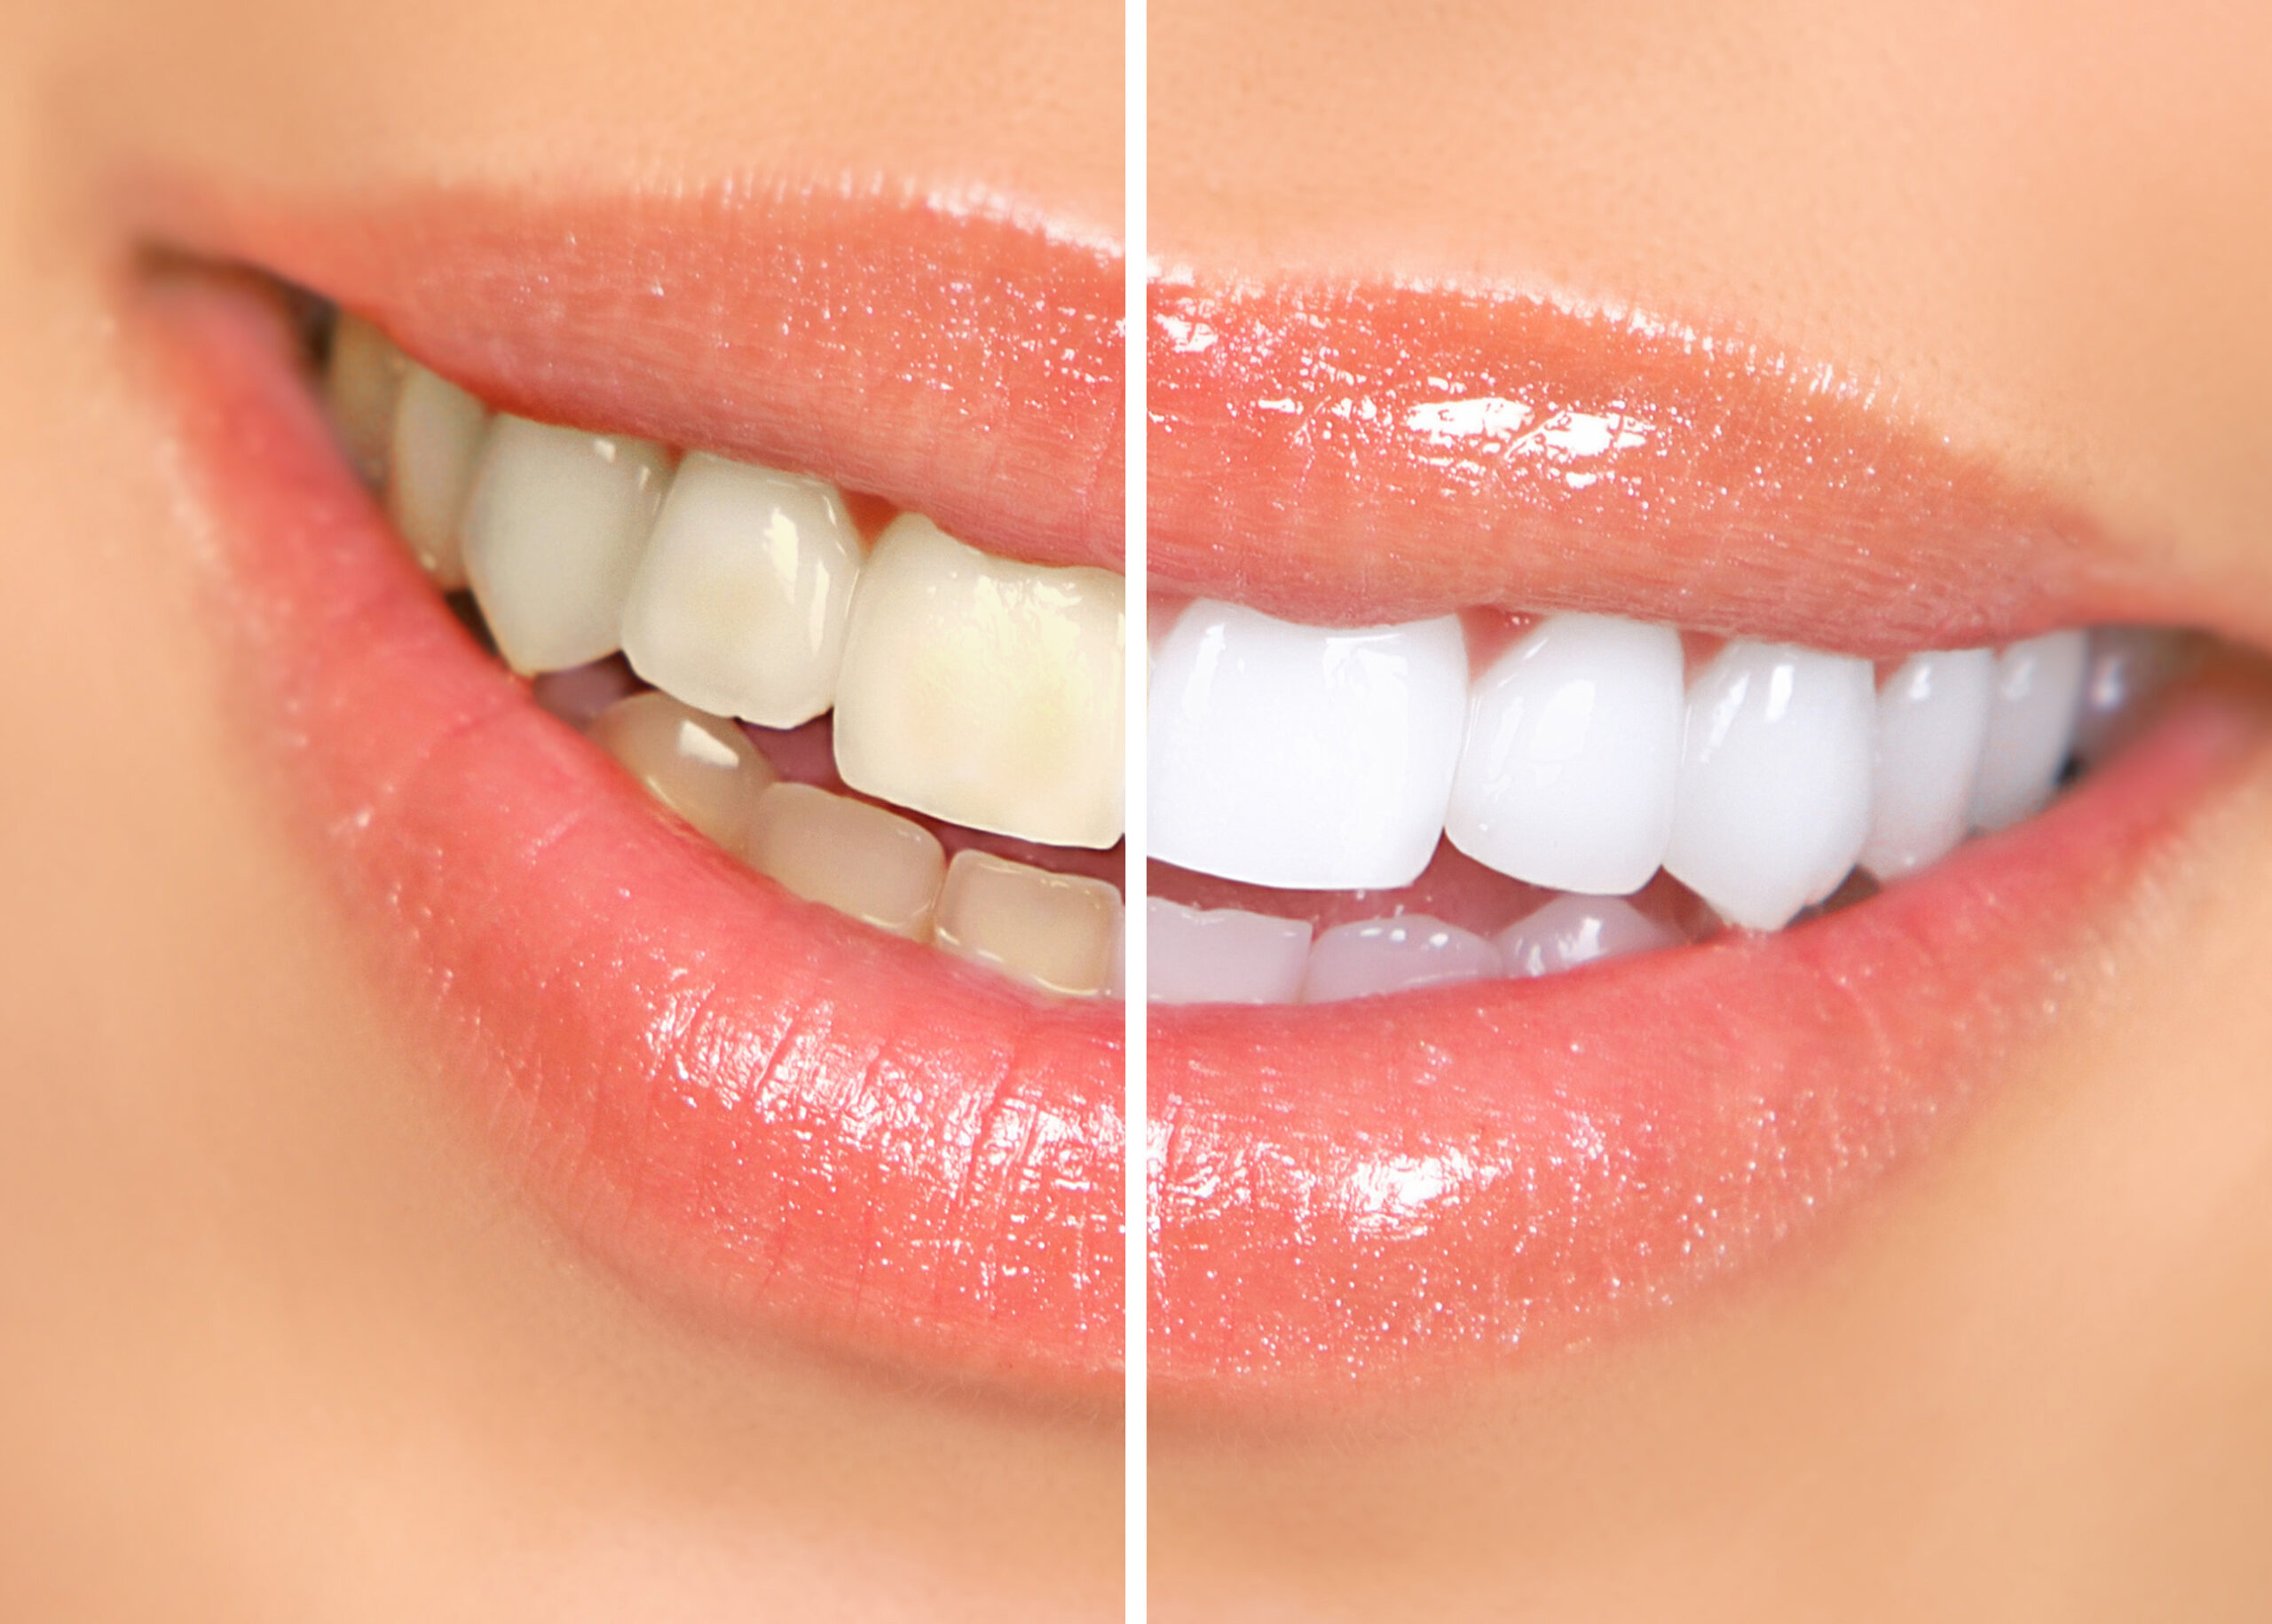 Blanqueamiento dental antes y después - primer plano de la sonrisa de una mujer.